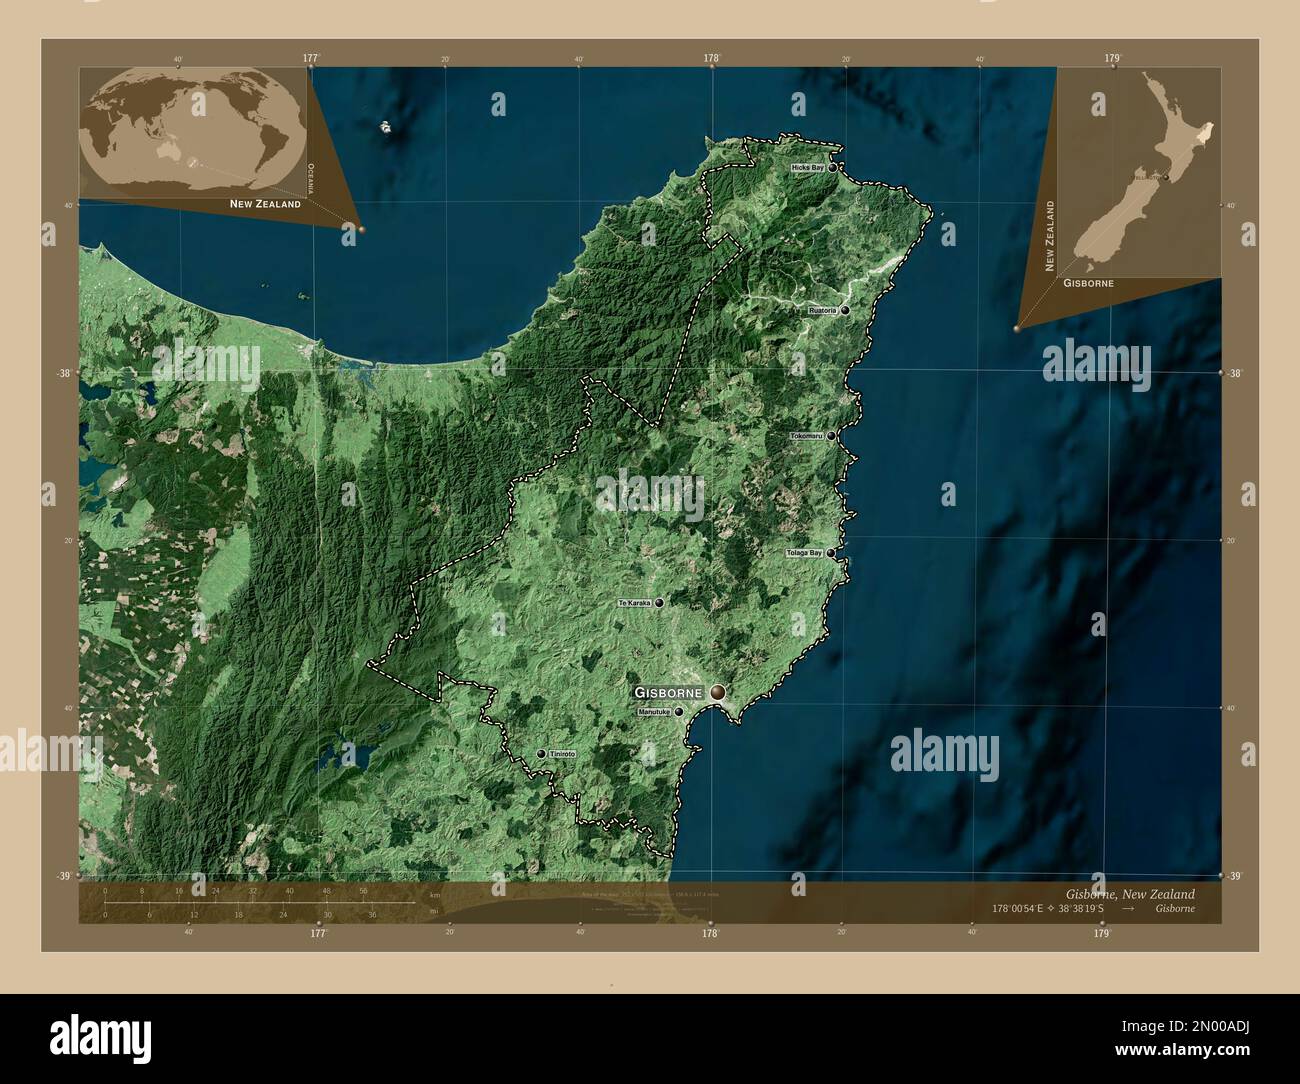 Gisborne, consiglio regionale della Nuova Zelanda. Mappa satellitare a bassa risoluzione. Località e nomi delle principali città della regione. Posizione ausiliaria ad angolo Foto Stock